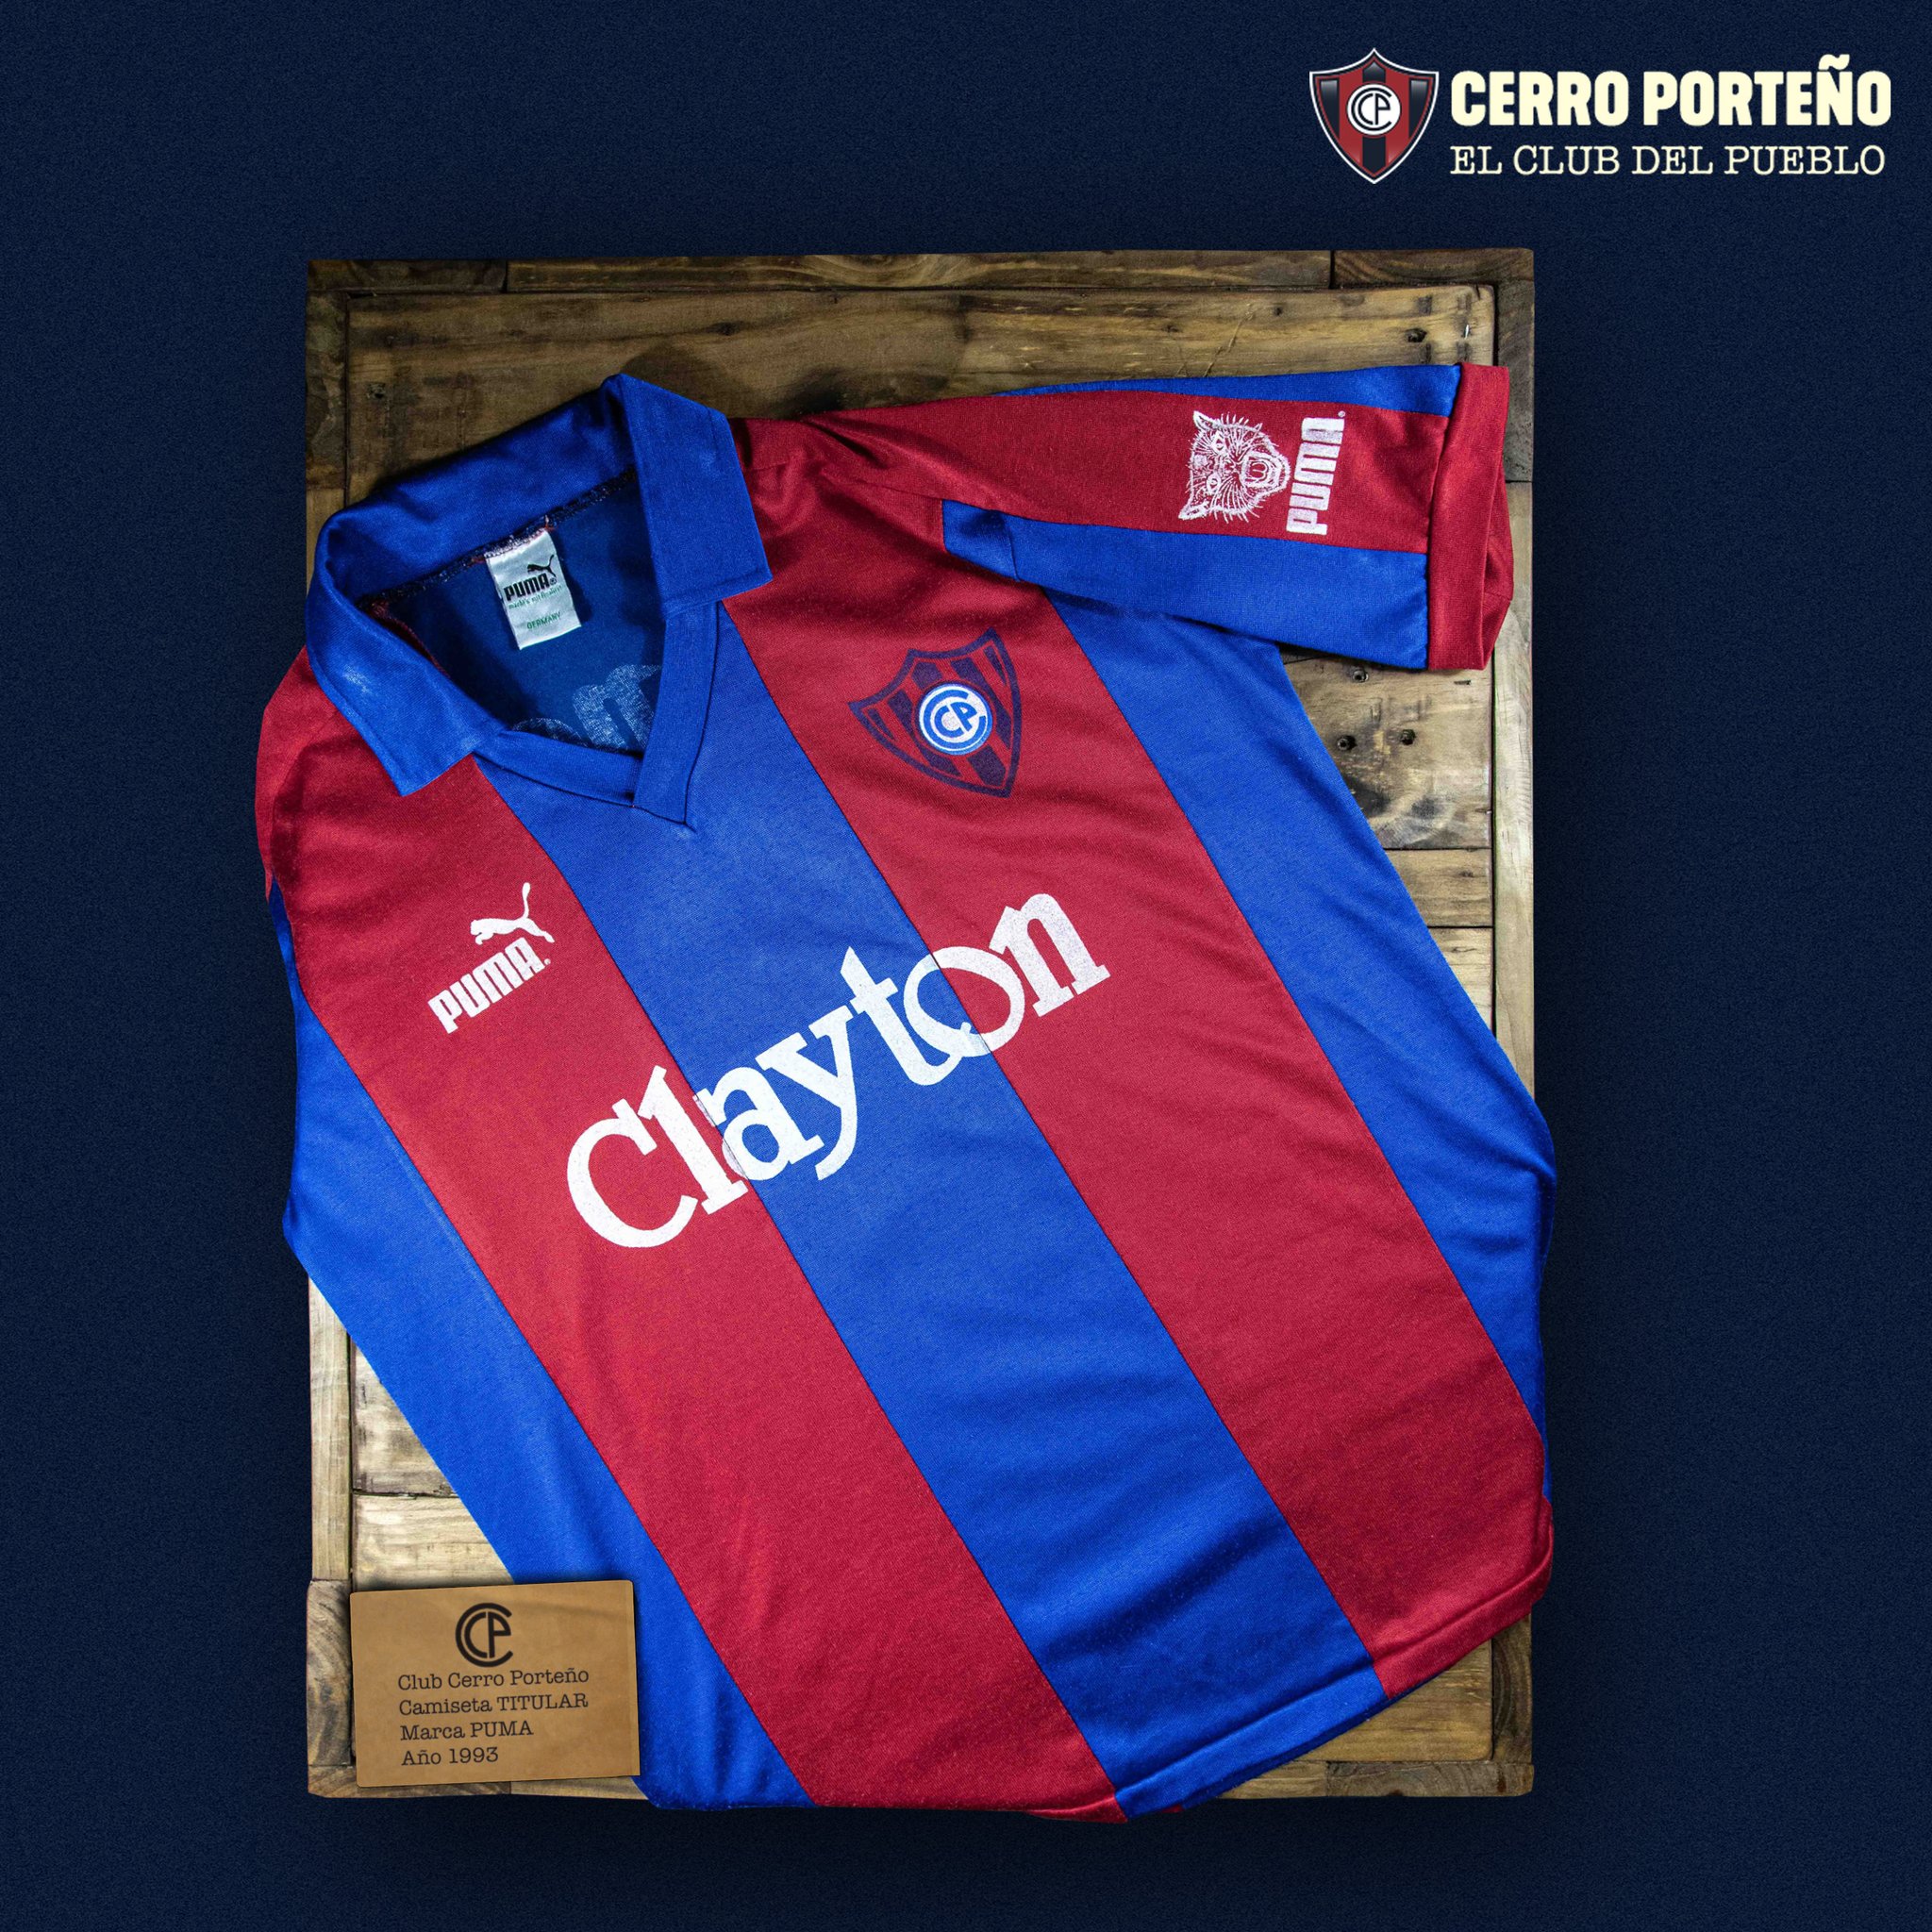 Club Cerro Porteño on Twitter: "La camiseta del #TBTAzulgrana es la @PUMAParaguay del año 1993 ✓ Con la 3 ecuatoriano Luis Capurro en la 🇪🇨 ¿Qué te parece esta casaca?